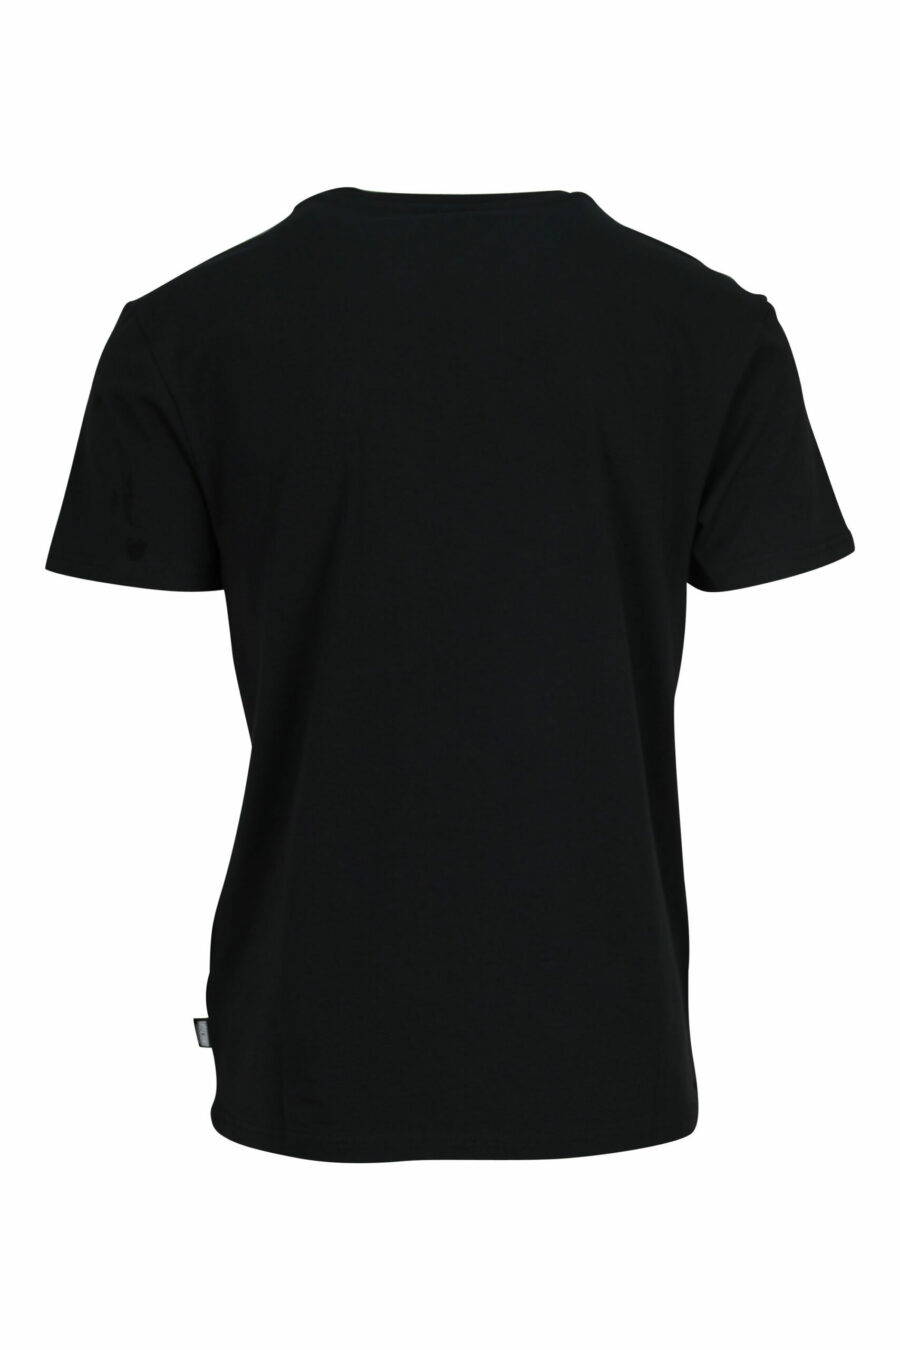 T-shirt noir avec mini-logo ours "underbear" en caoutchouc blanc - 667113602639 à l'échelle 1